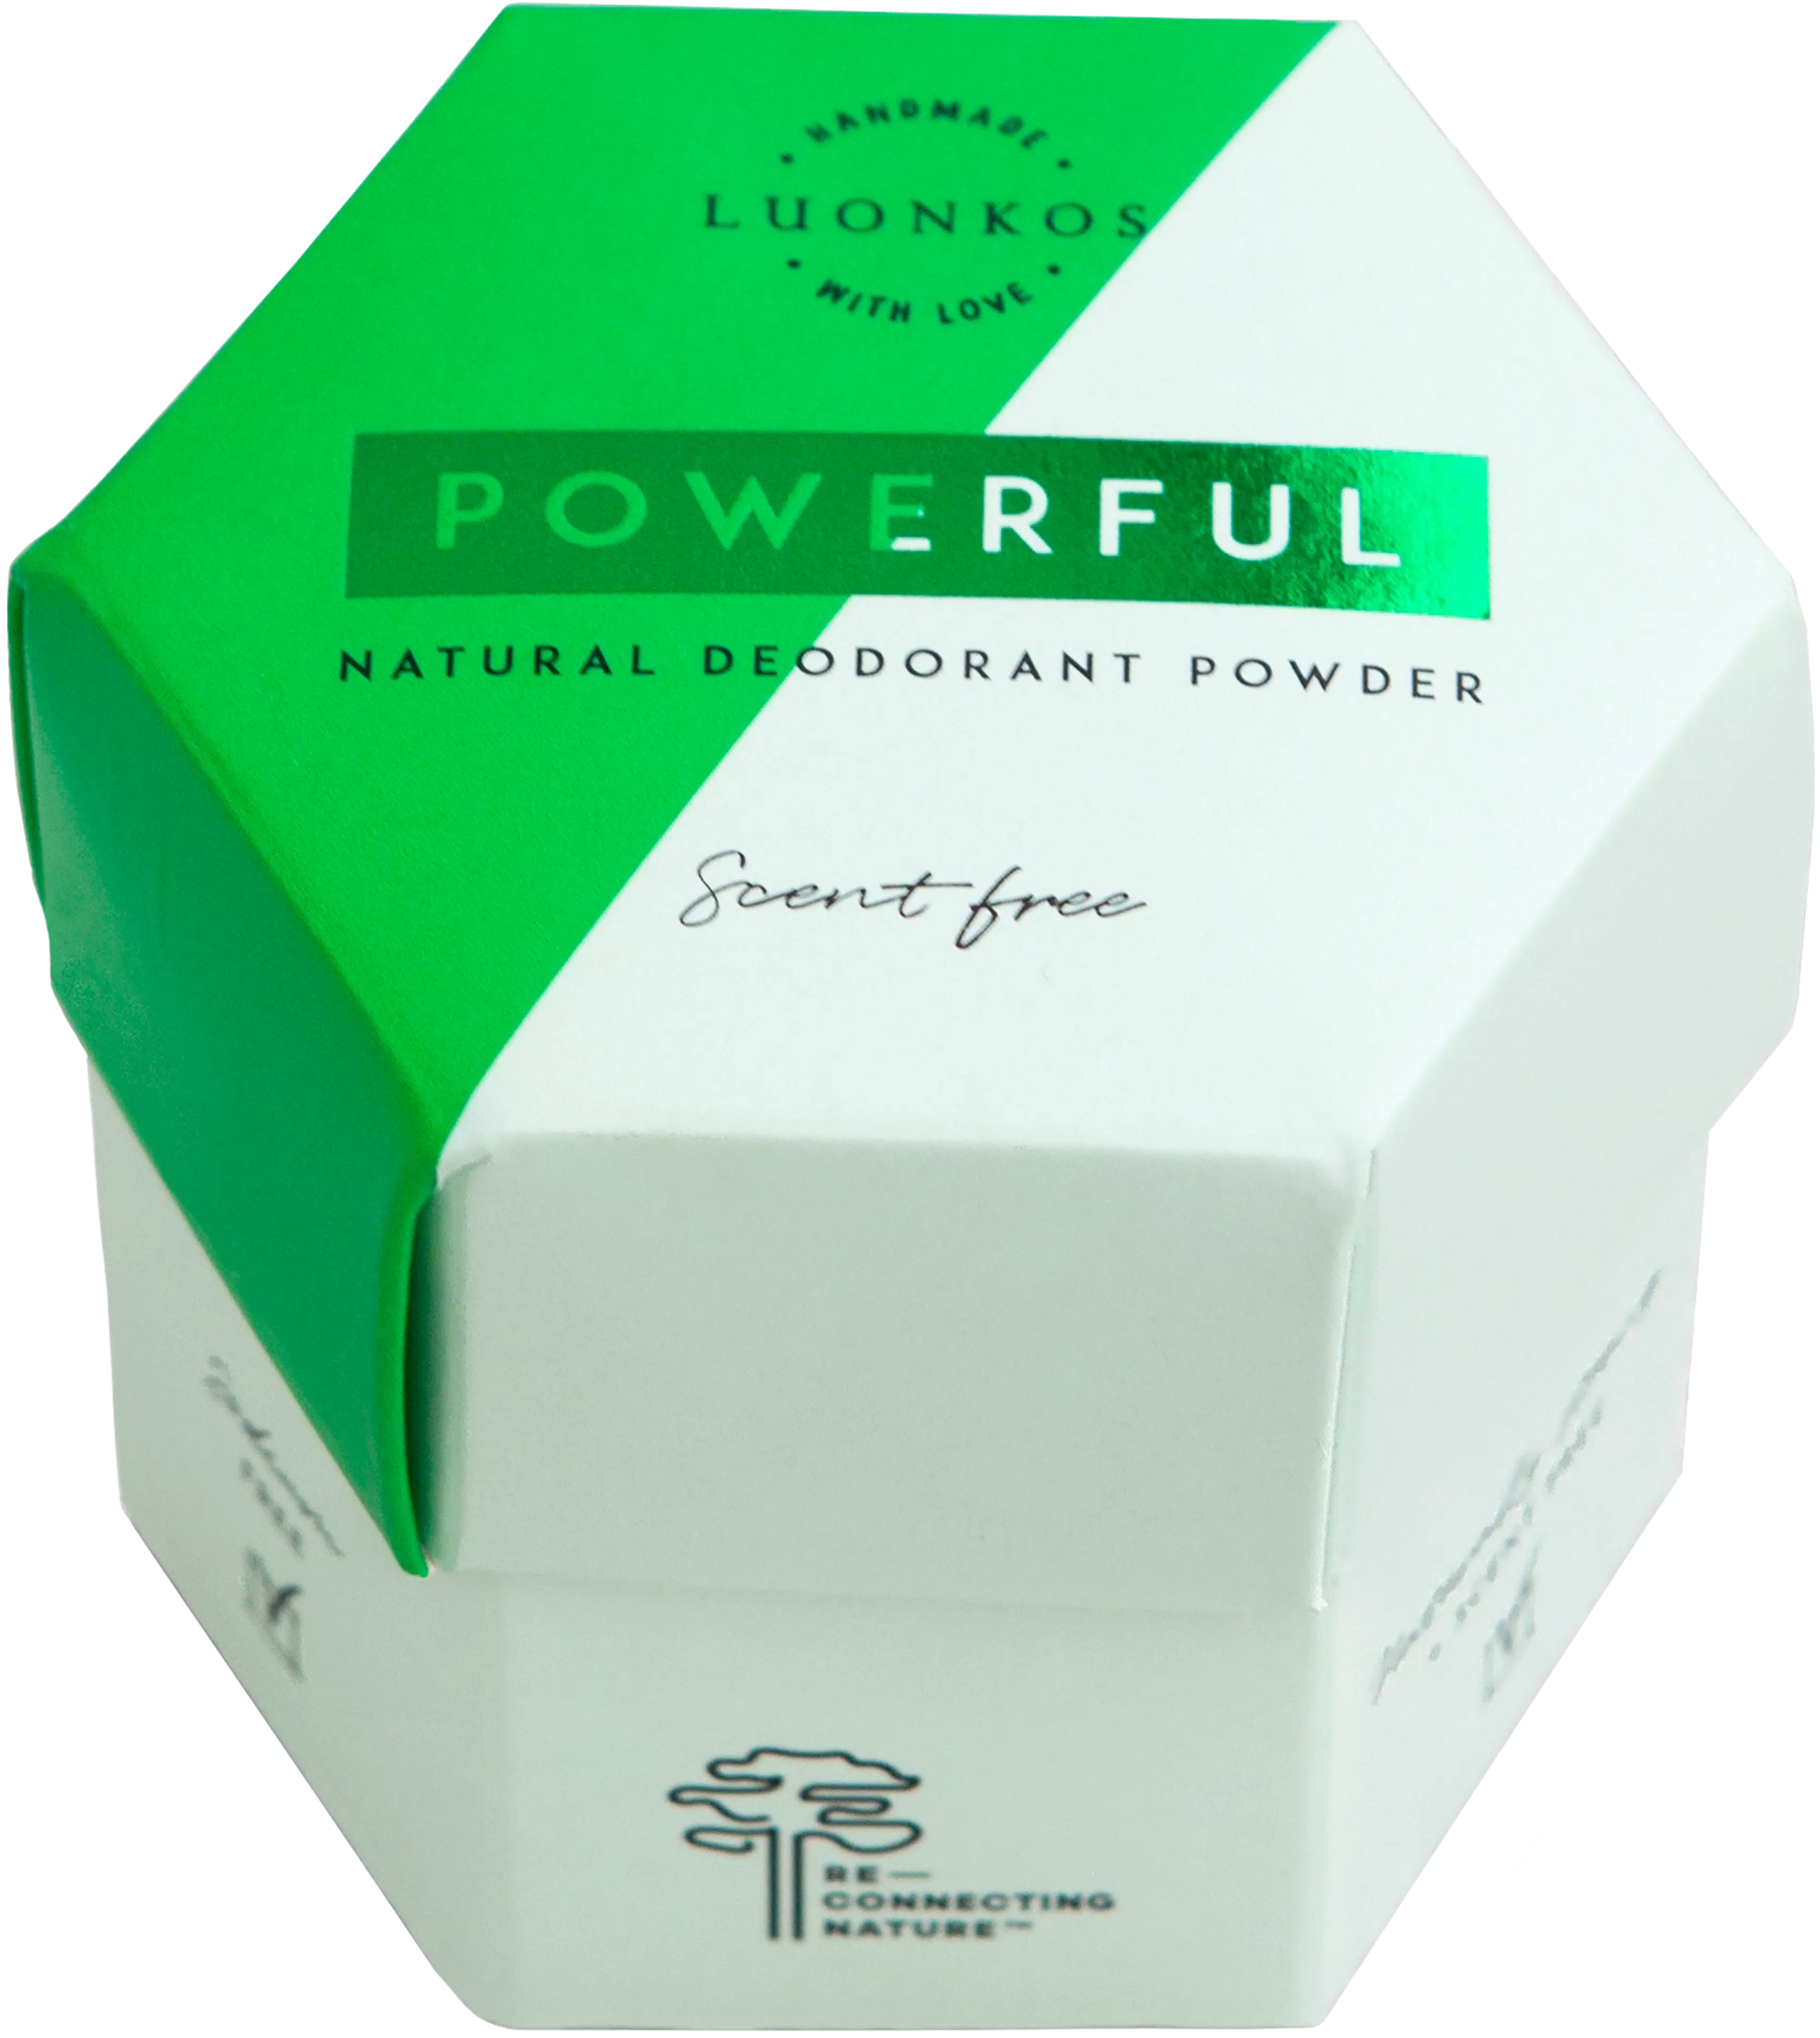 Luonkos Powerful jauhedeodorantti tuoksuton 50 g